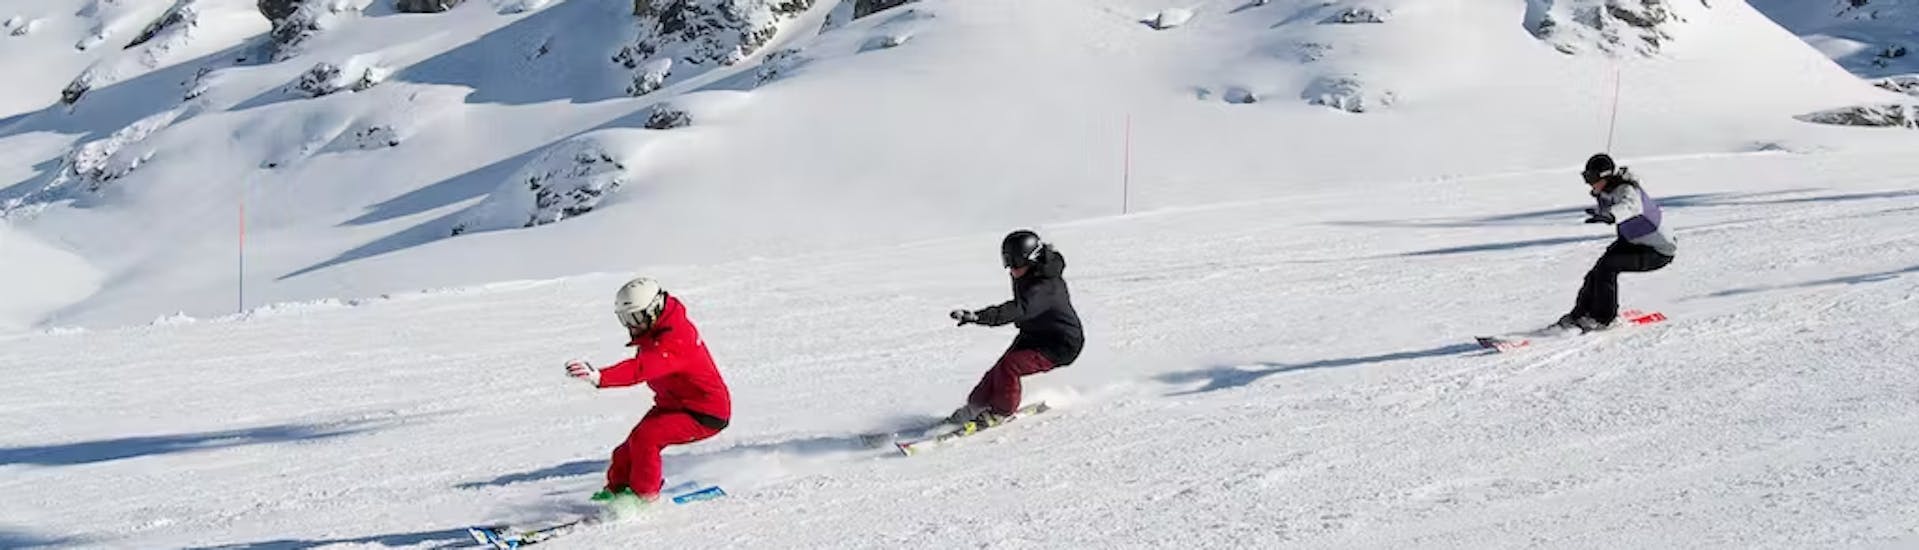 Lezioni di sci per adolescenti (14-18 anni) per sciatori avanzati.